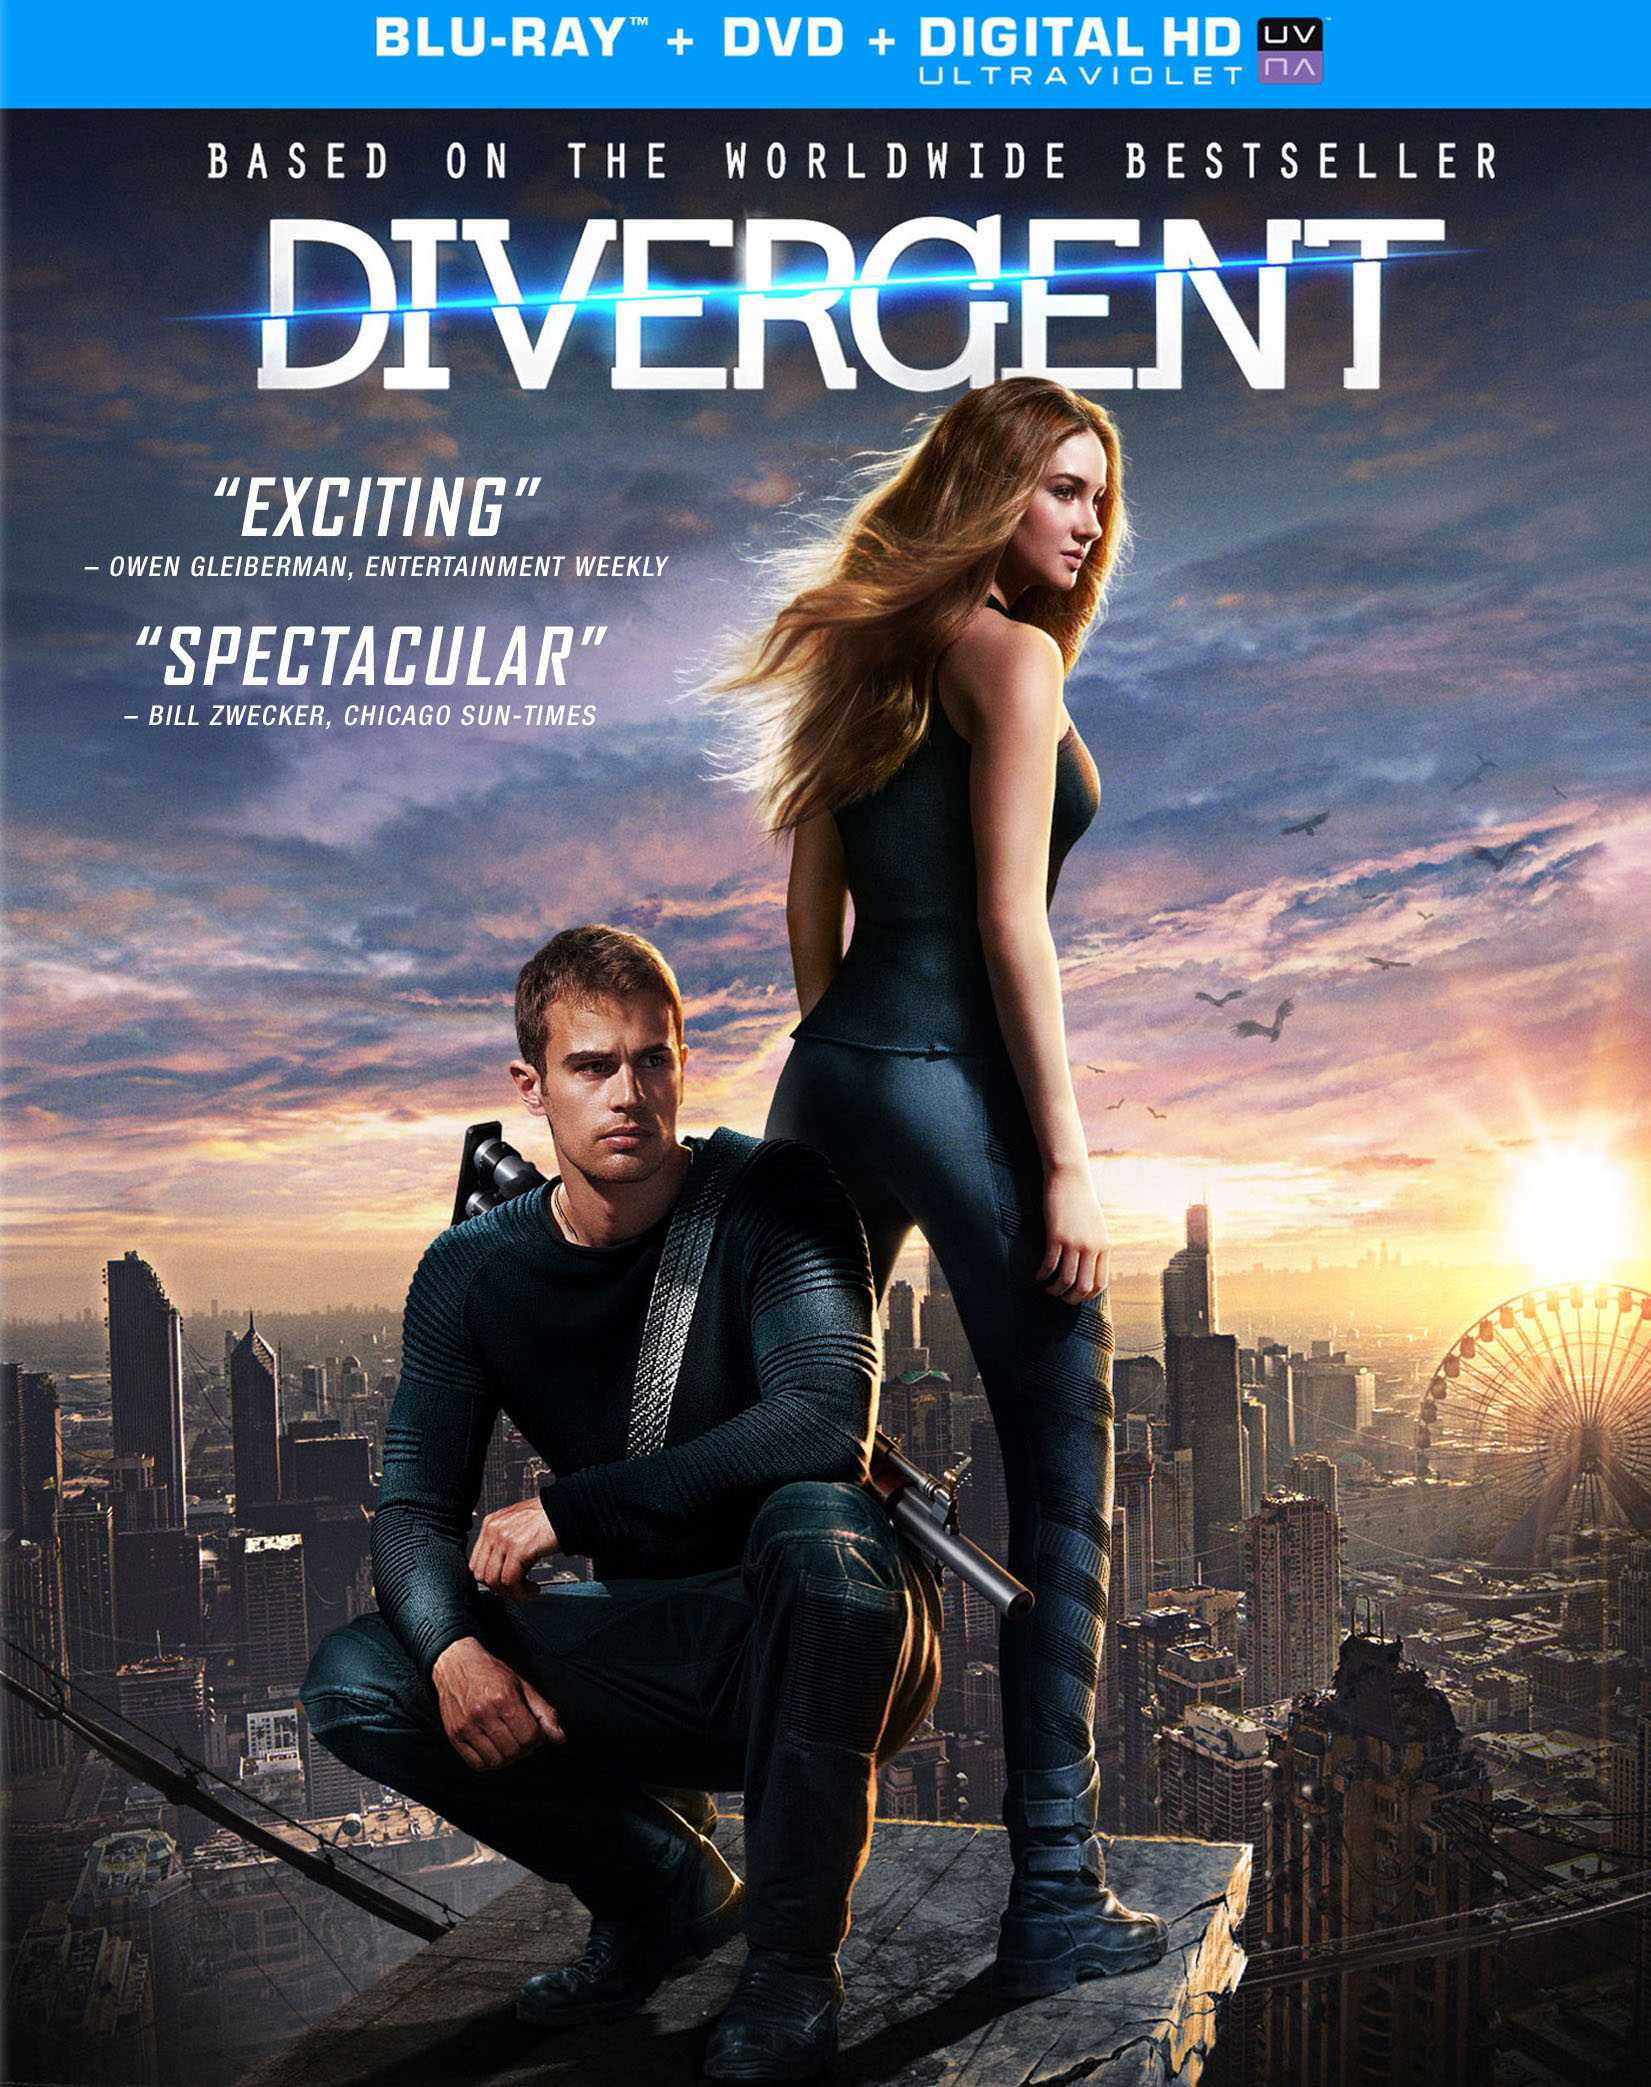 Concreet koppel Omdat Divergent [2 Discs] [Includes Digital Copy] [Blu-ray/DVD] [2014] - Best Buy